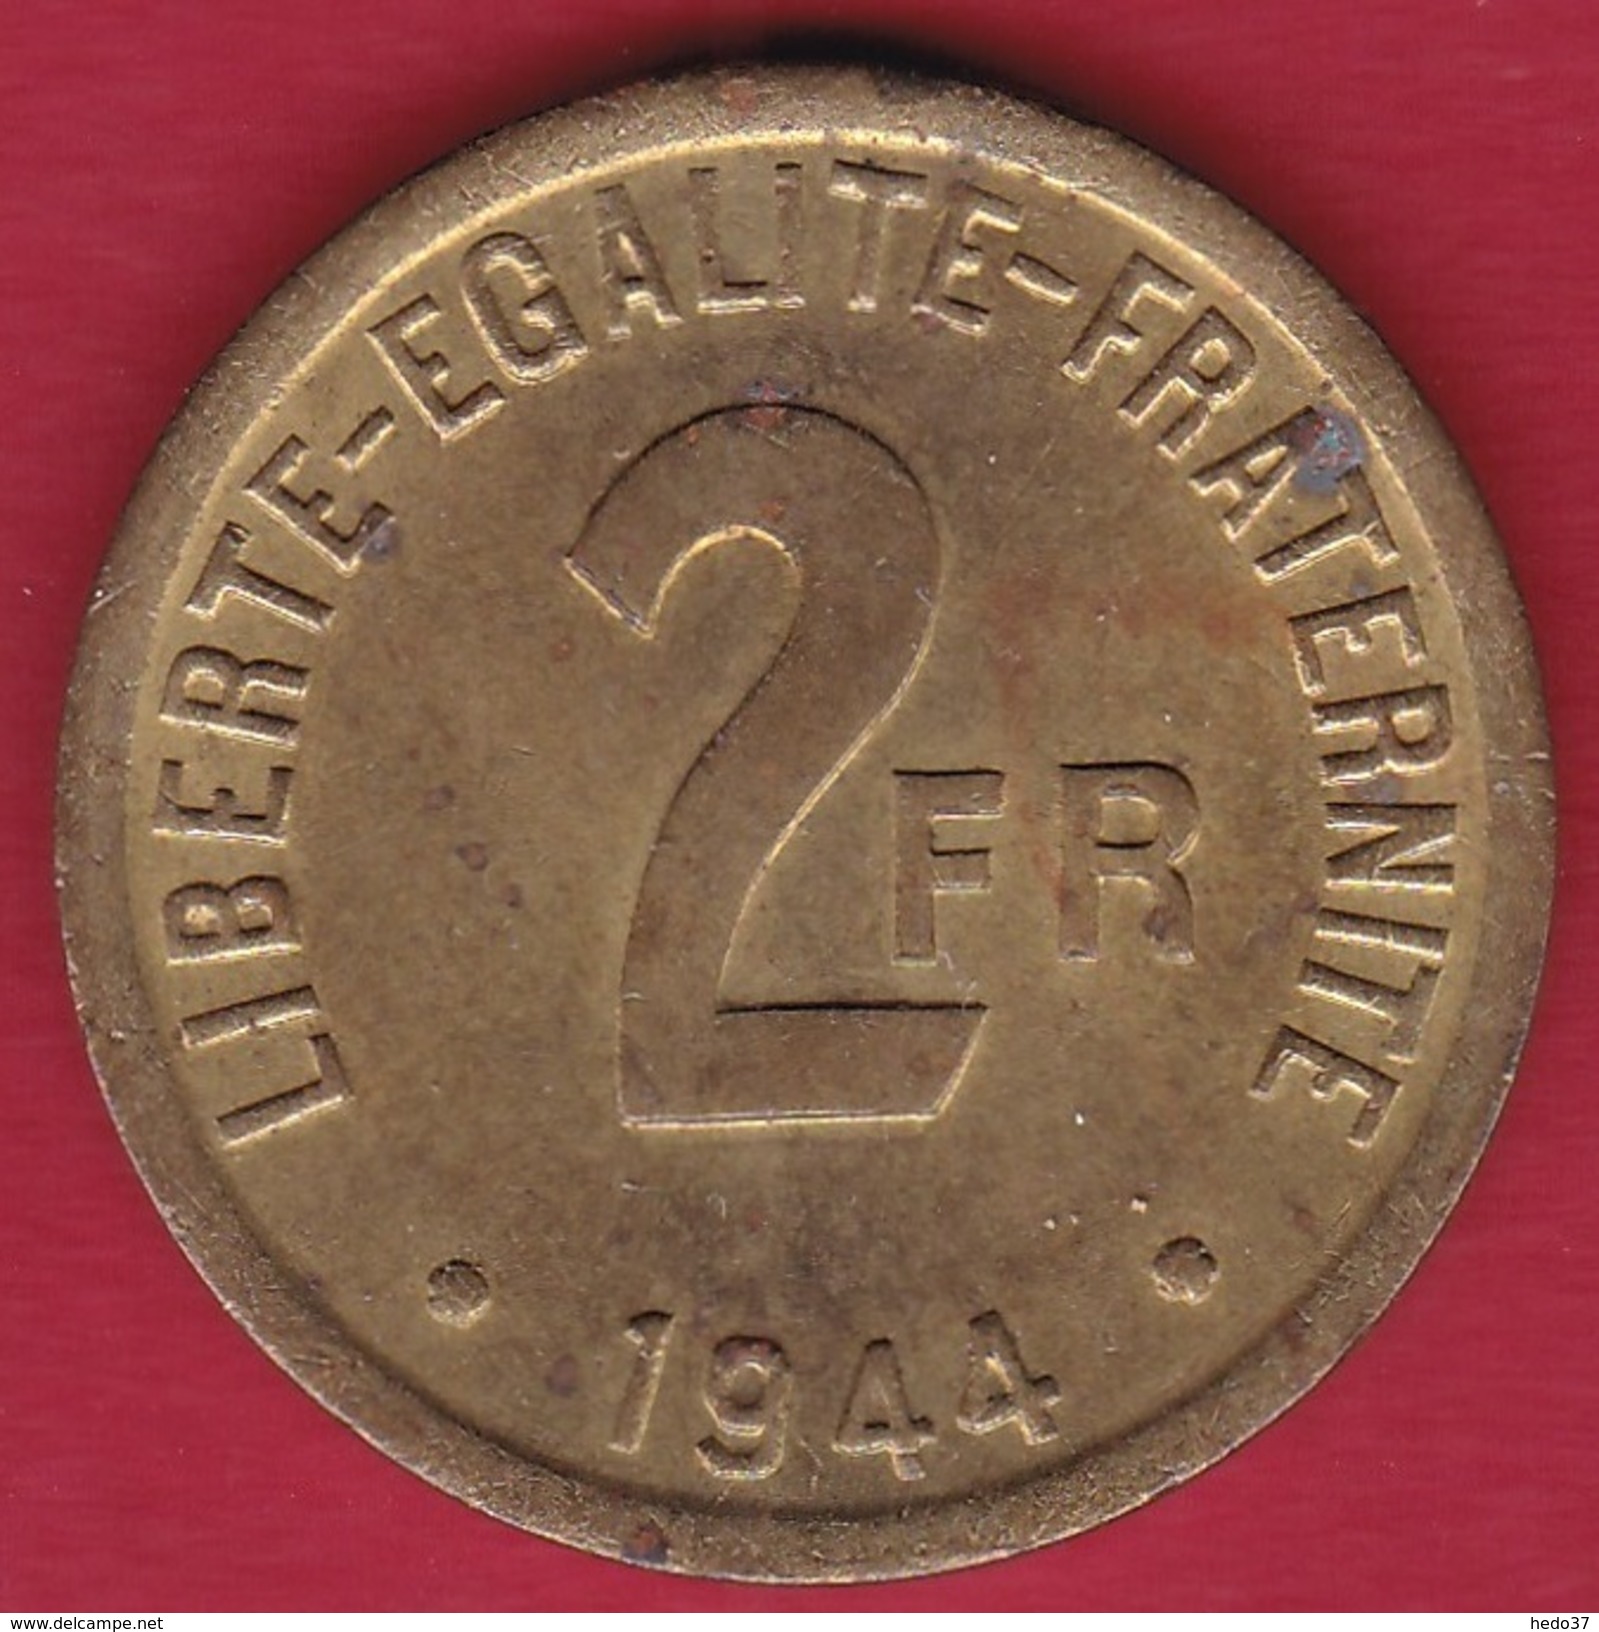 France 2 Francs France Libre - 1944 - TTB+ - 2 Francs